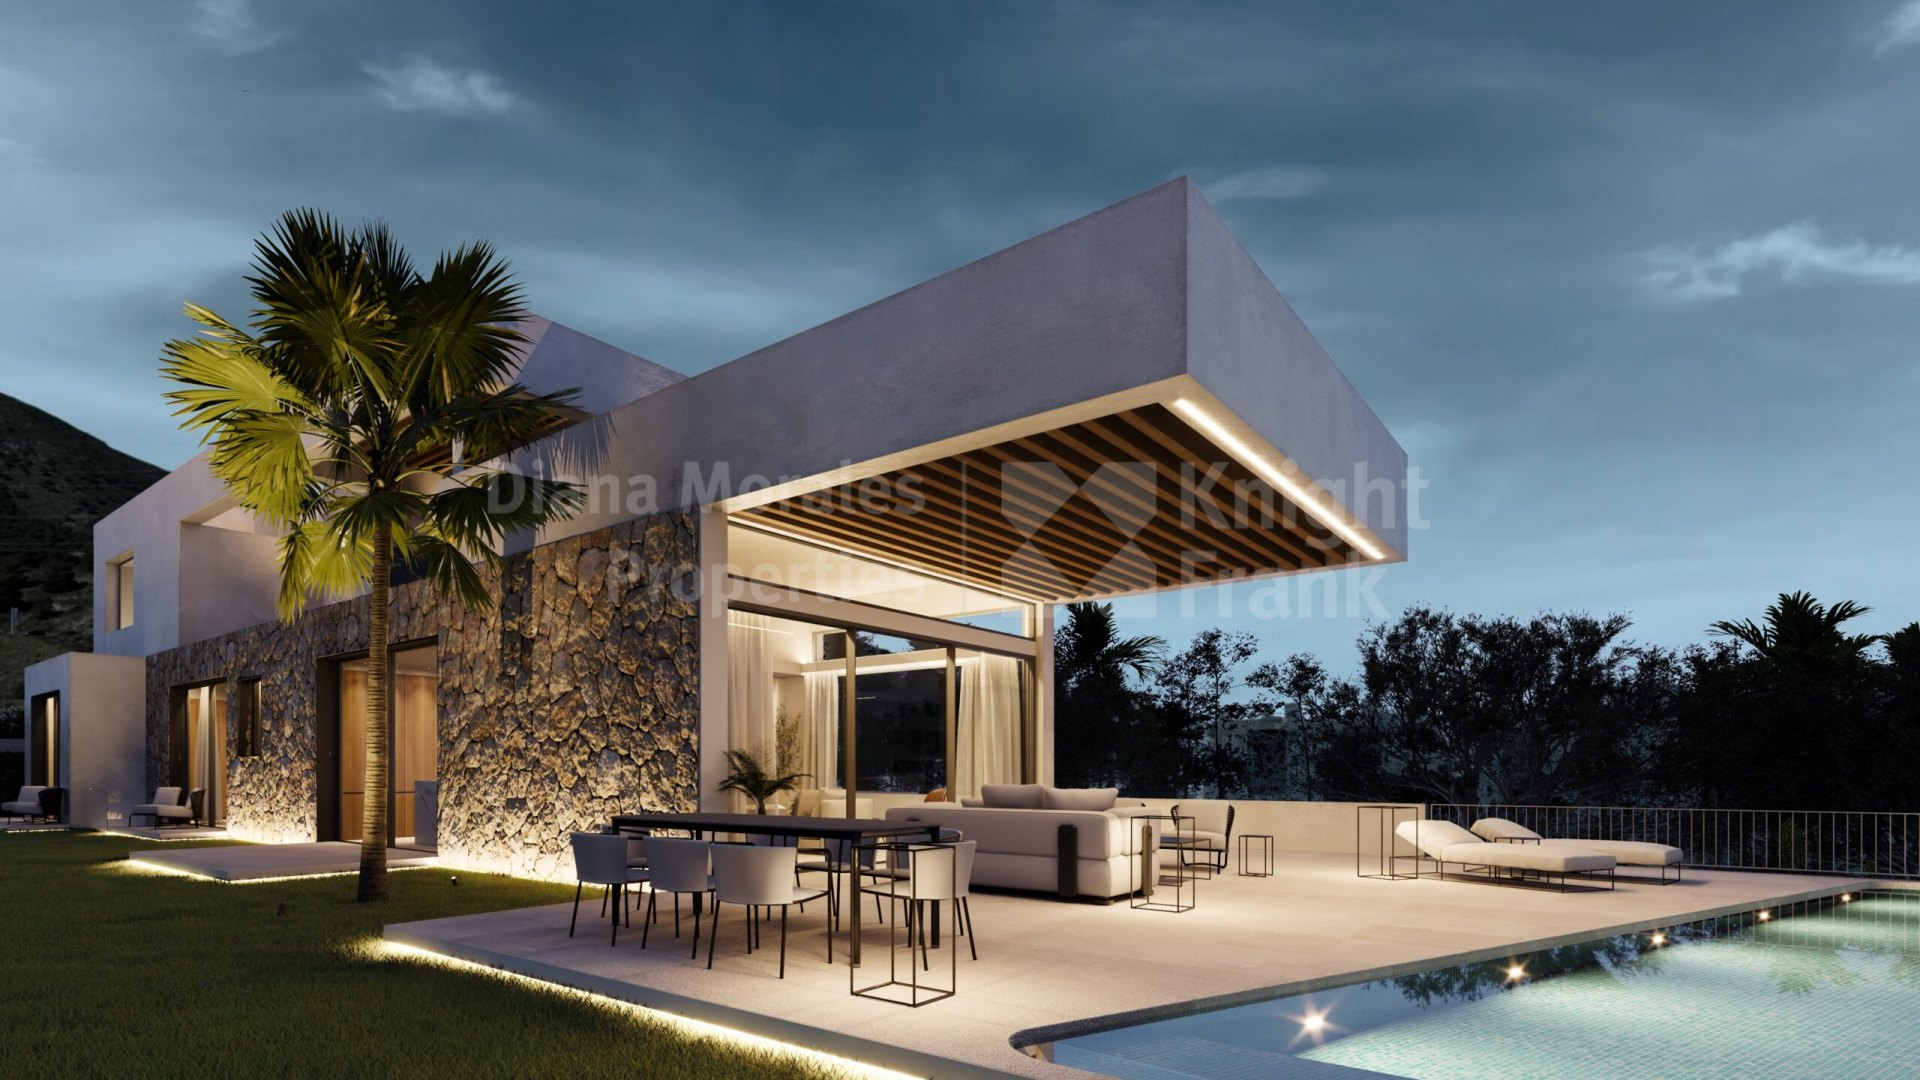 Villas Higueron, Новый южно-восточный комплекс в Эль Игероне